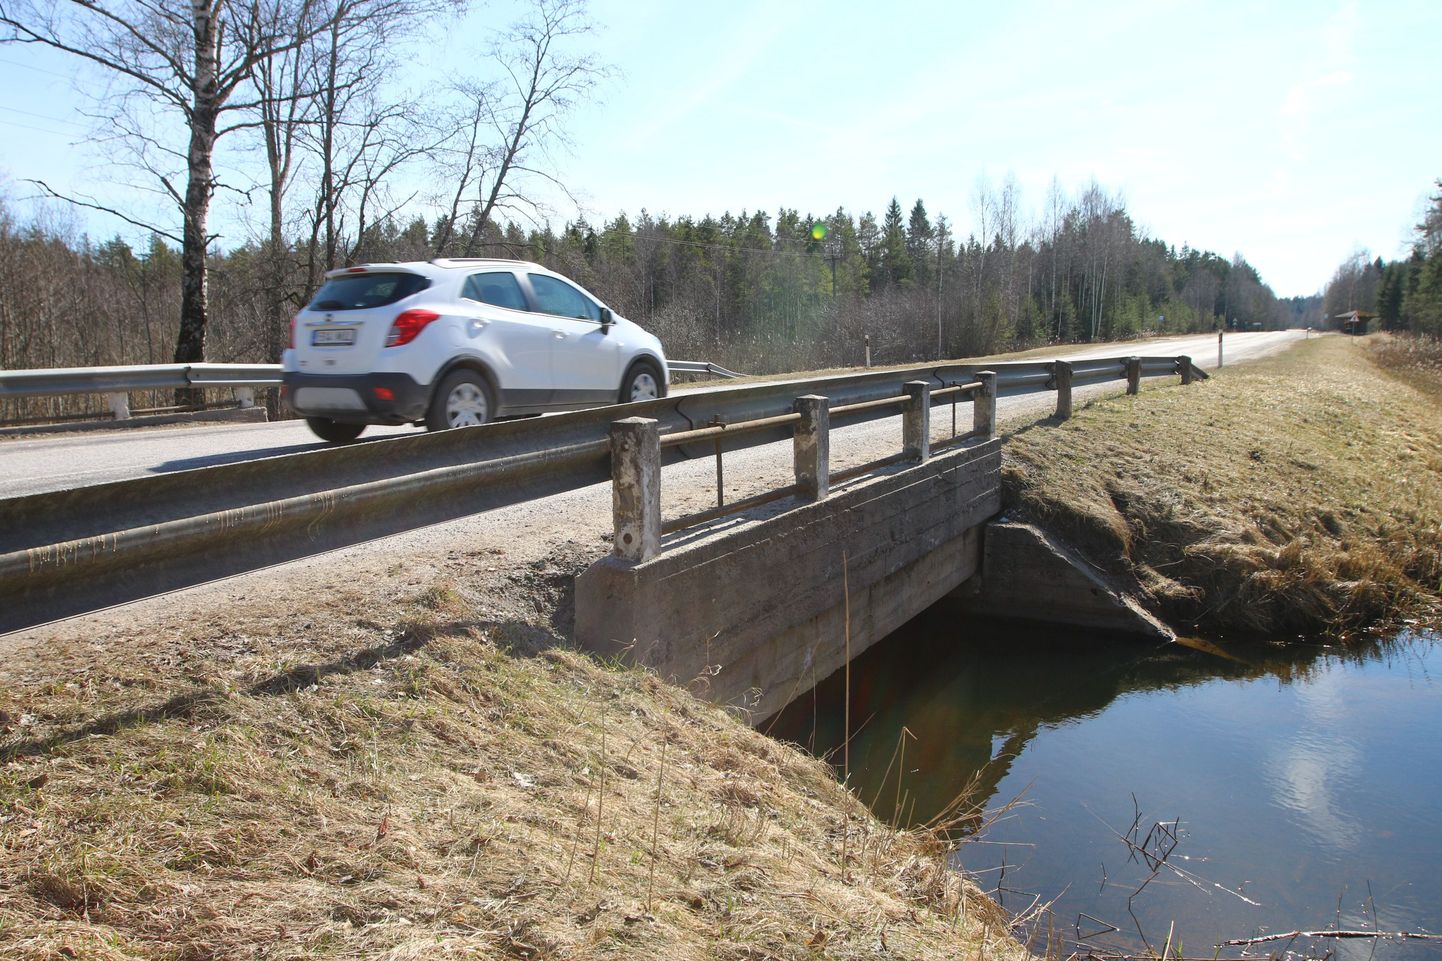 Valgamaal läheb sel aastal remonti kaks silda: Koriste ja Kintsli. Tatra–Otepää–Sangaste maantee 20. kilomeetril asuva Kintsli silla ehituse ja projekteerimise maksumus on 166 000 eurot. Sõidukite liikumist silla ehitus ei takista, liiklus käib ajutise ülepääsu kaudu.